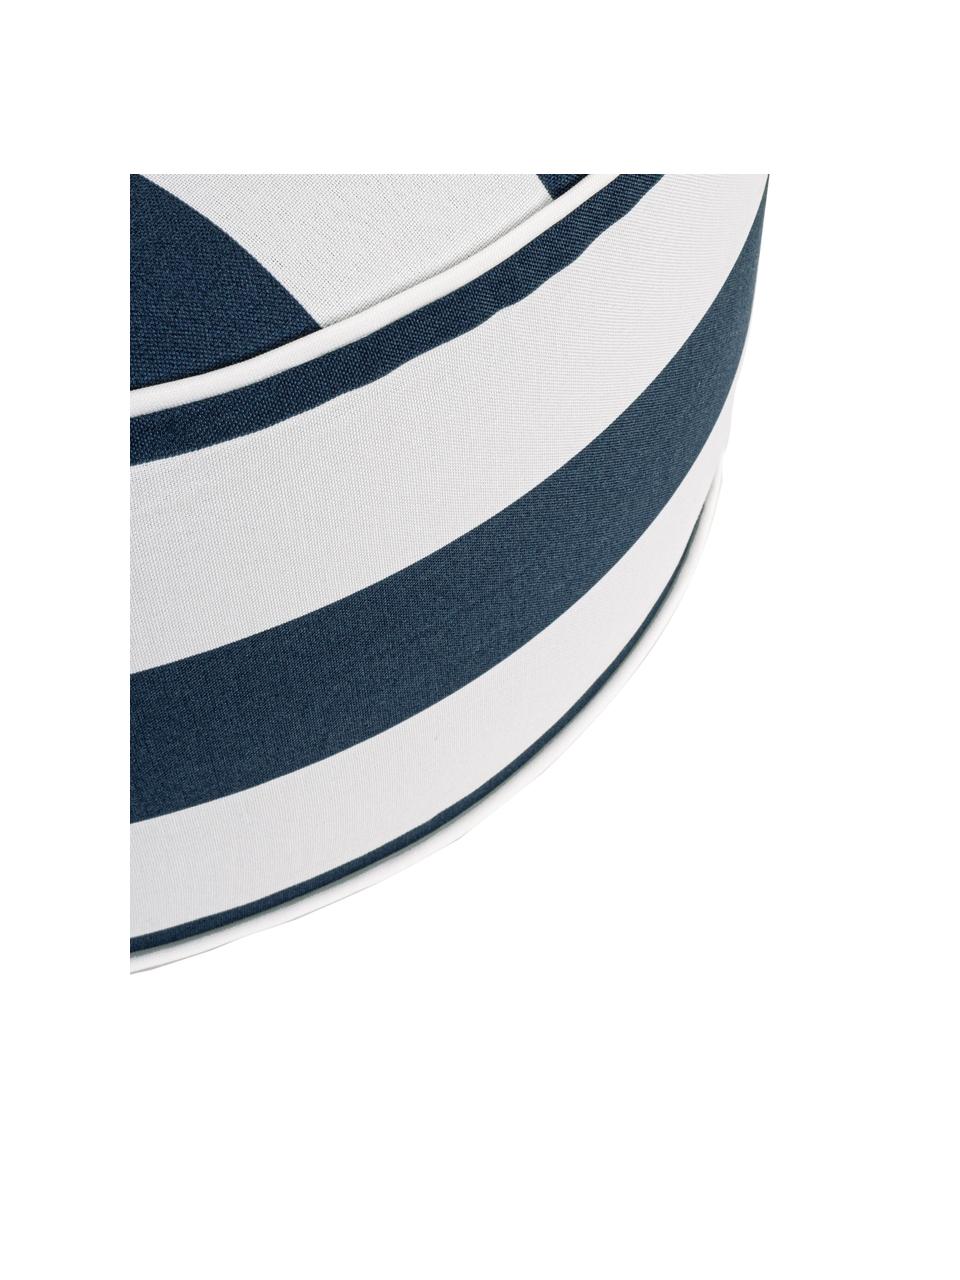 Nafukovací outdoorový puf Stripes, Bílá, modrá, Ø 53 cm, V 23 cm